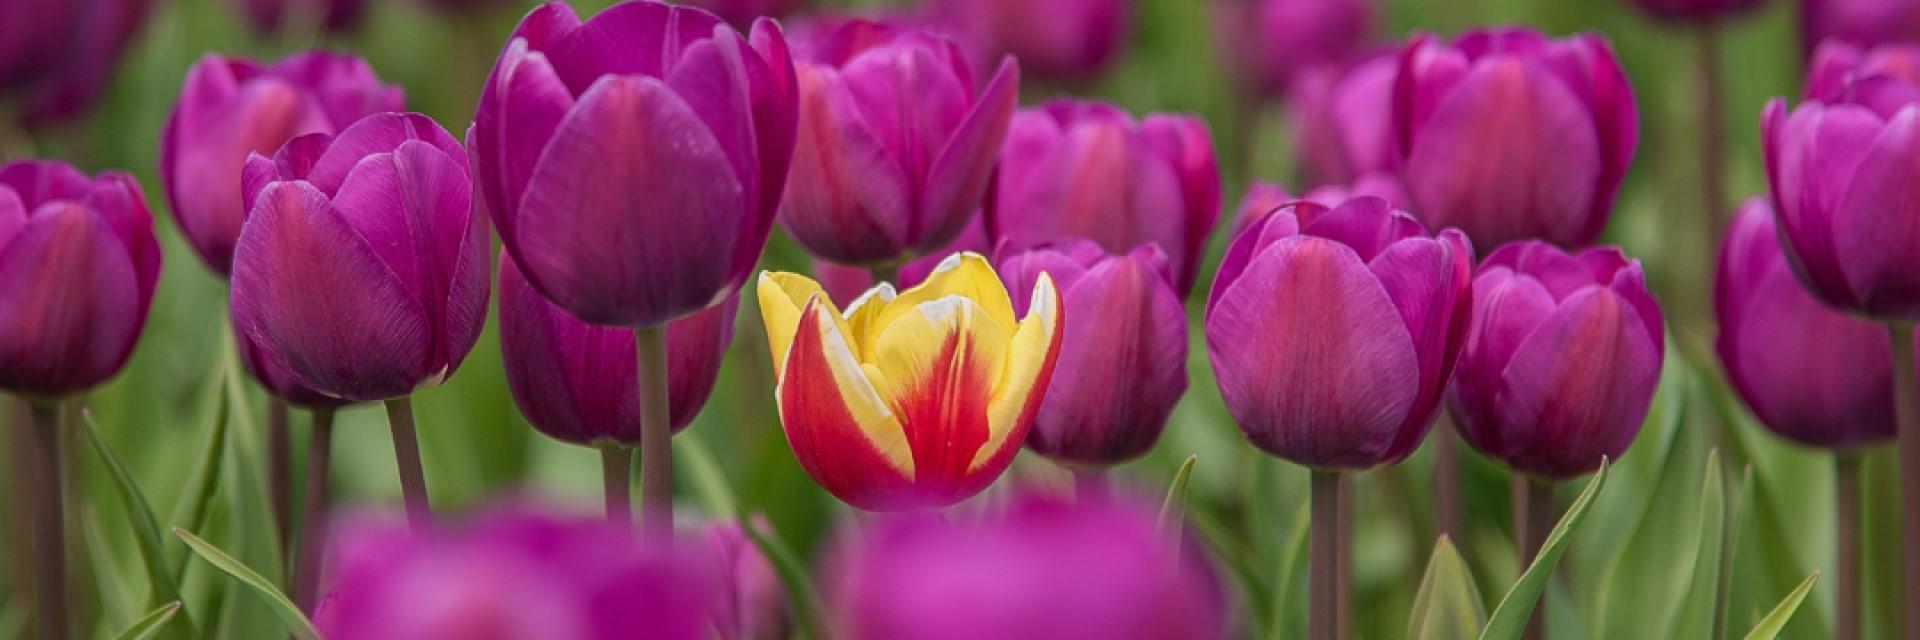 tulpen, hoogbegaafdheid, onderscheidenheid, Inclusiveness